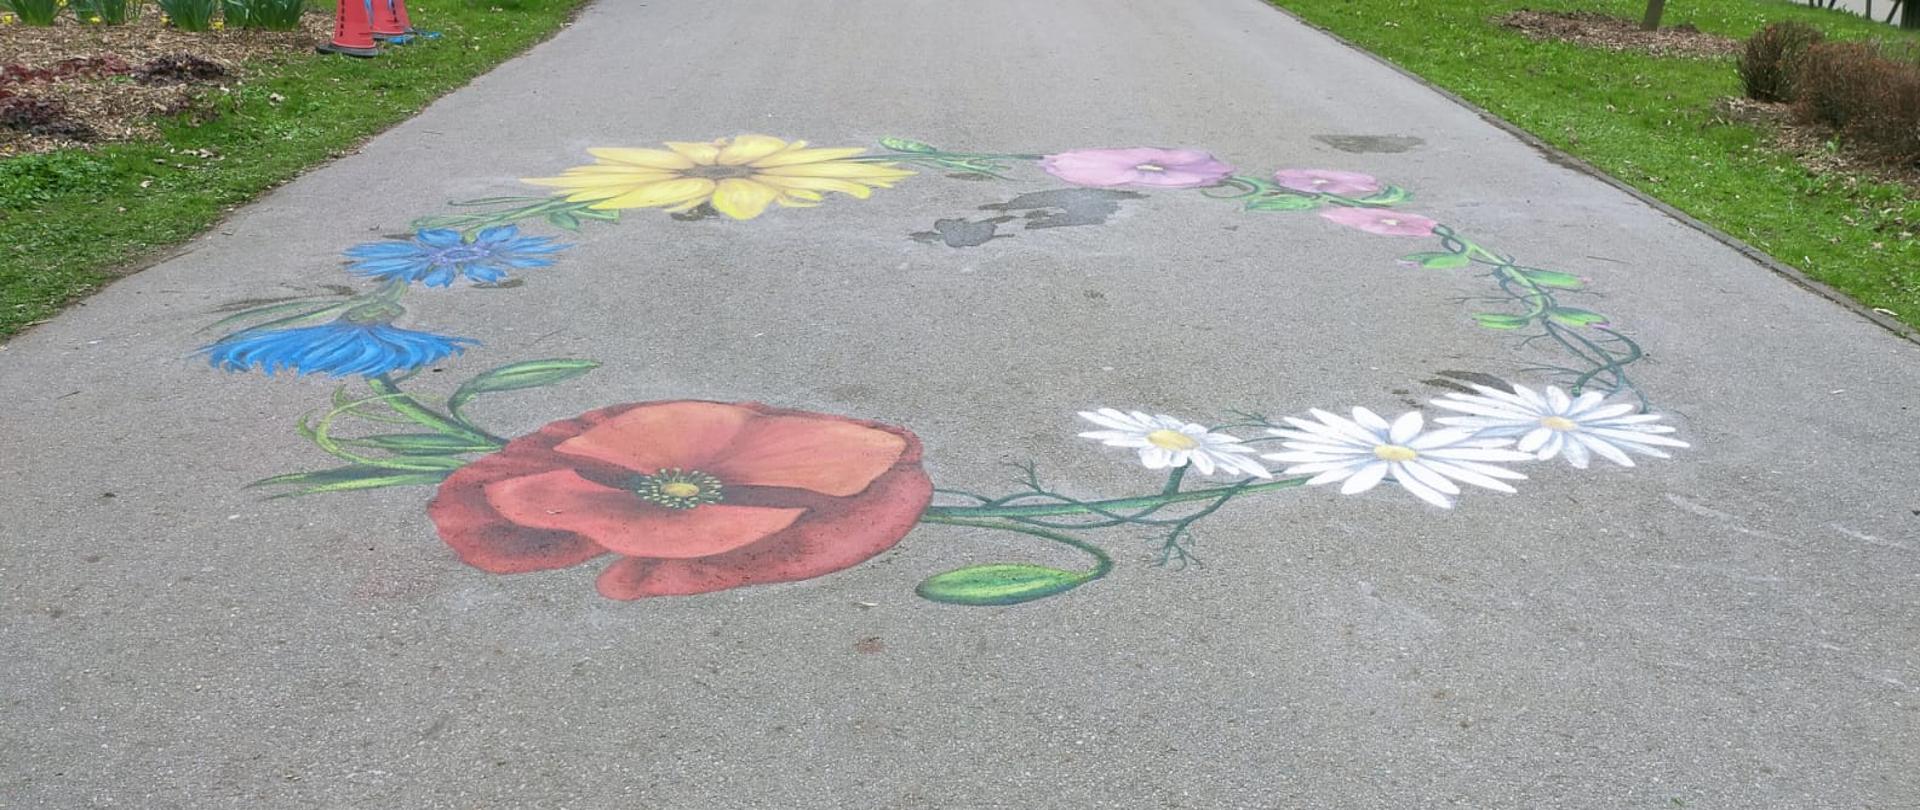 Polne kwiaty namalowane na chodniku